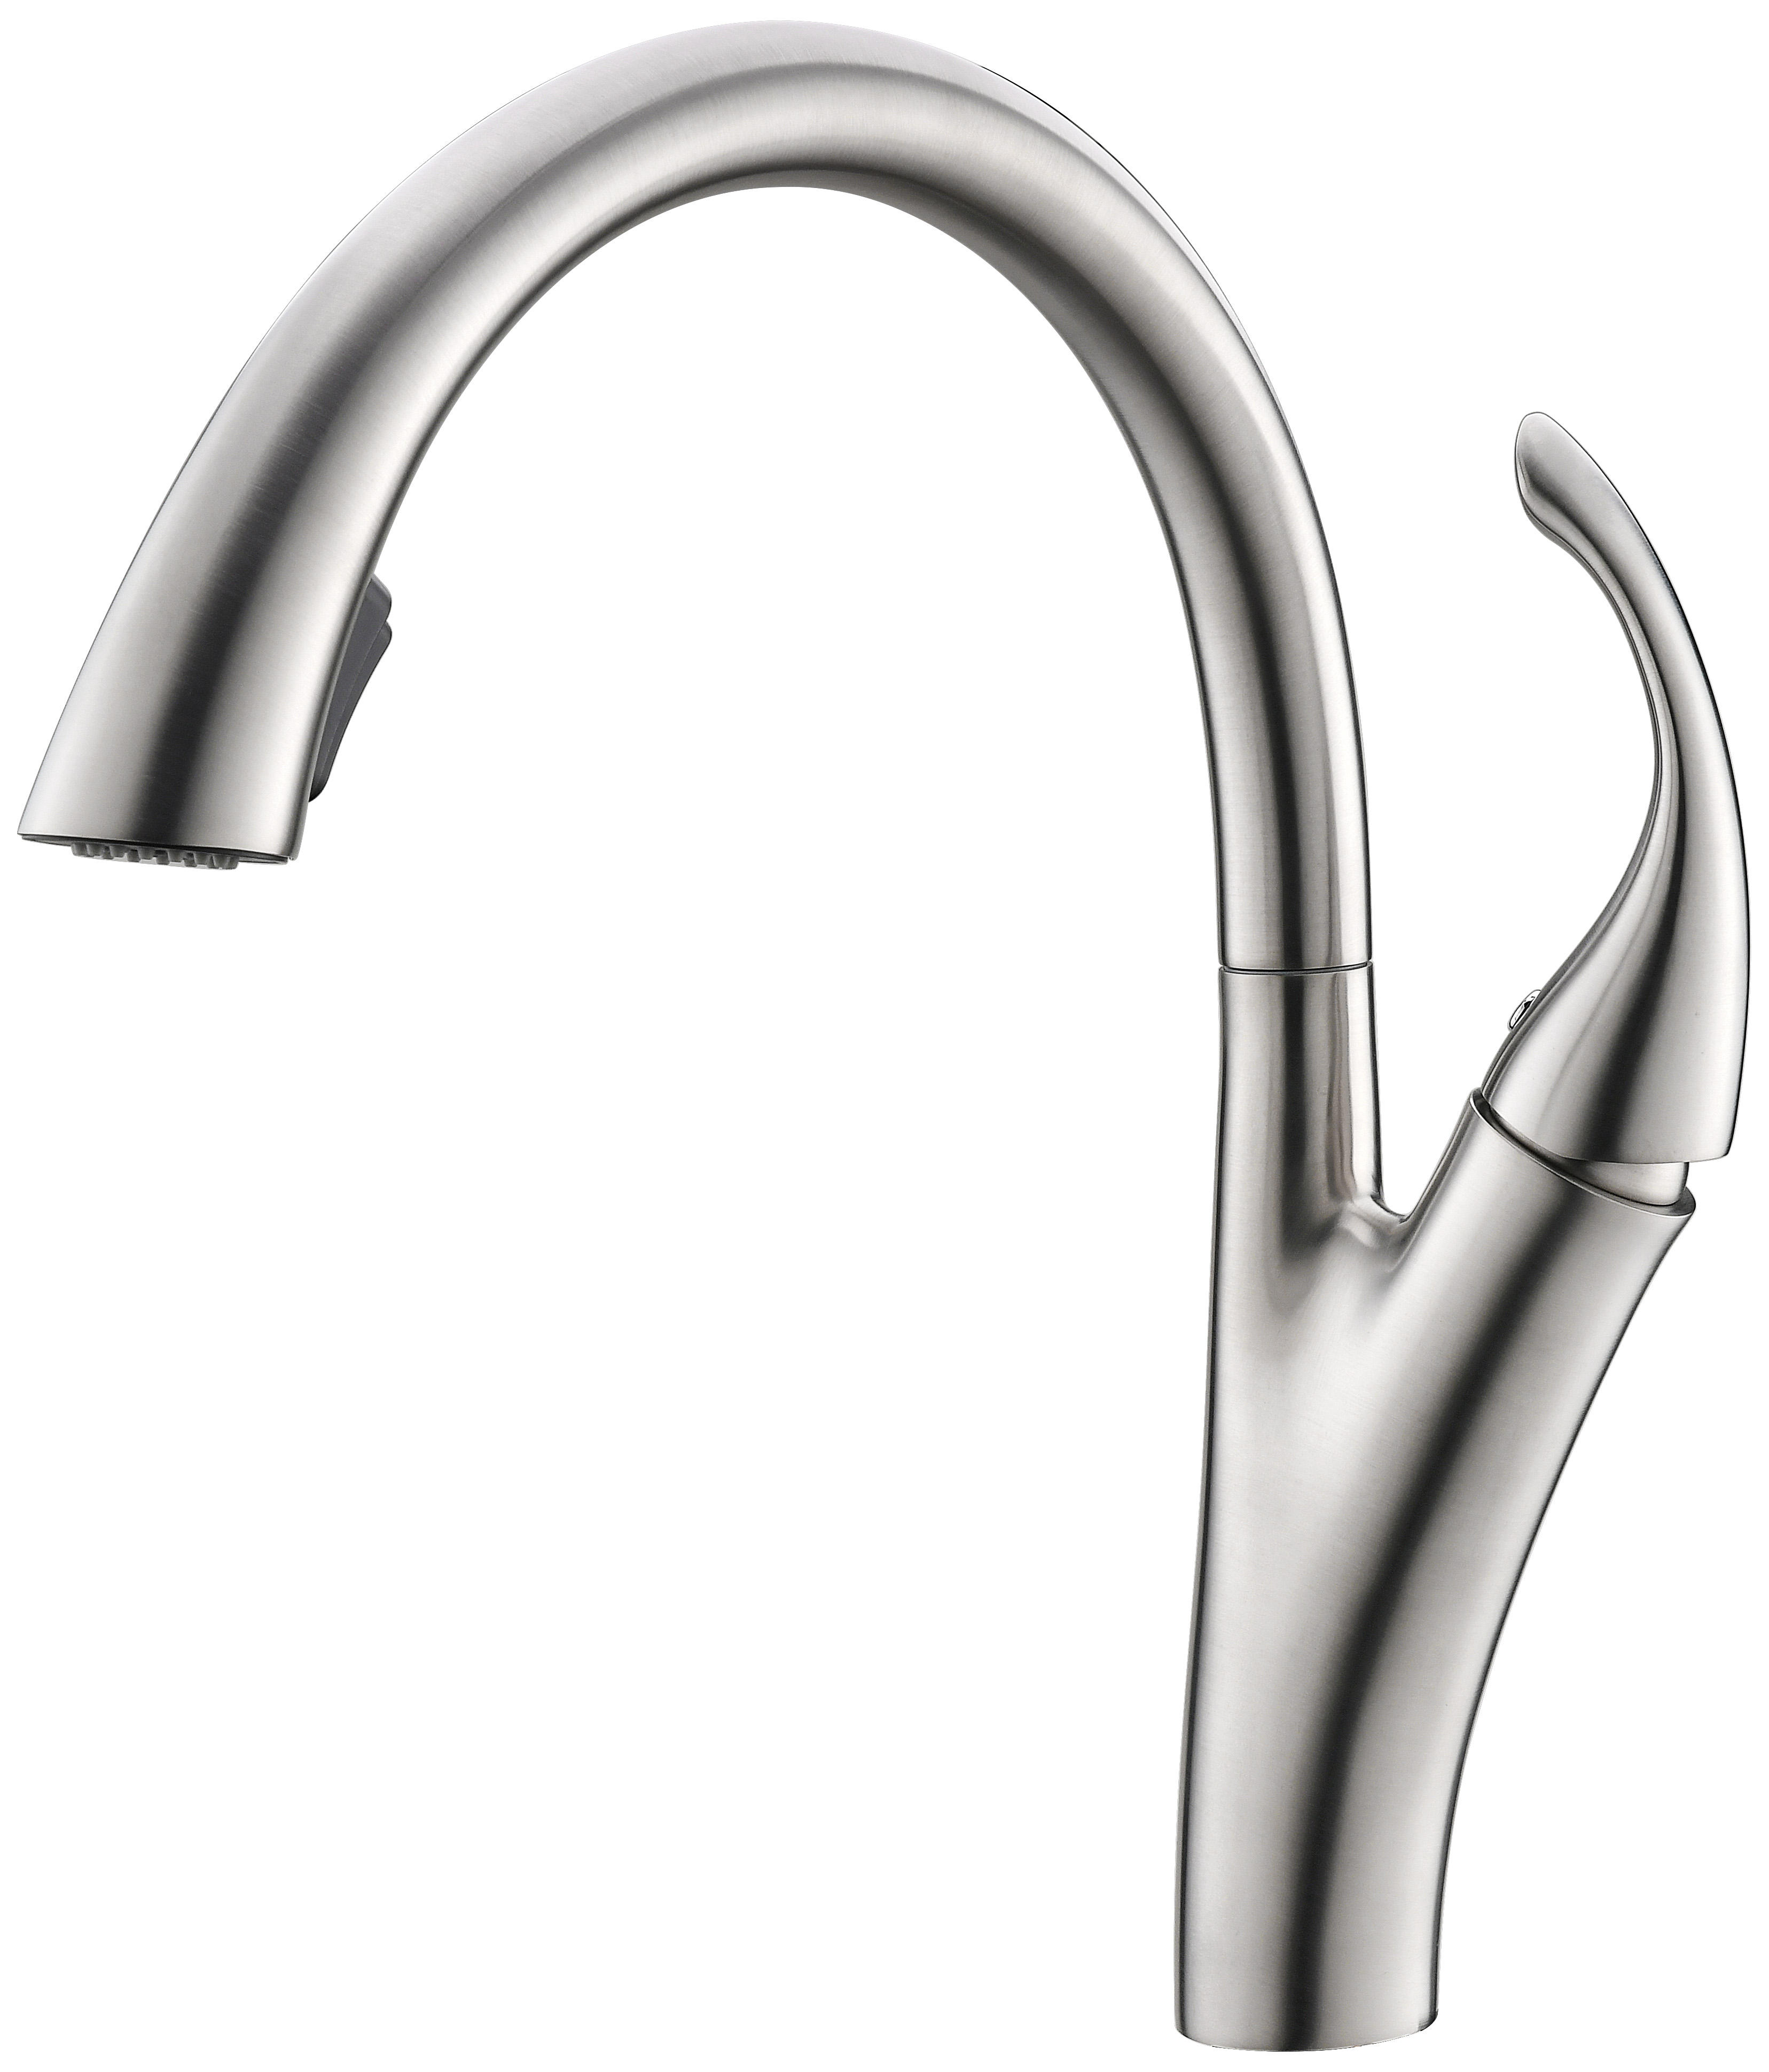 delta trinsic kitchen faucet